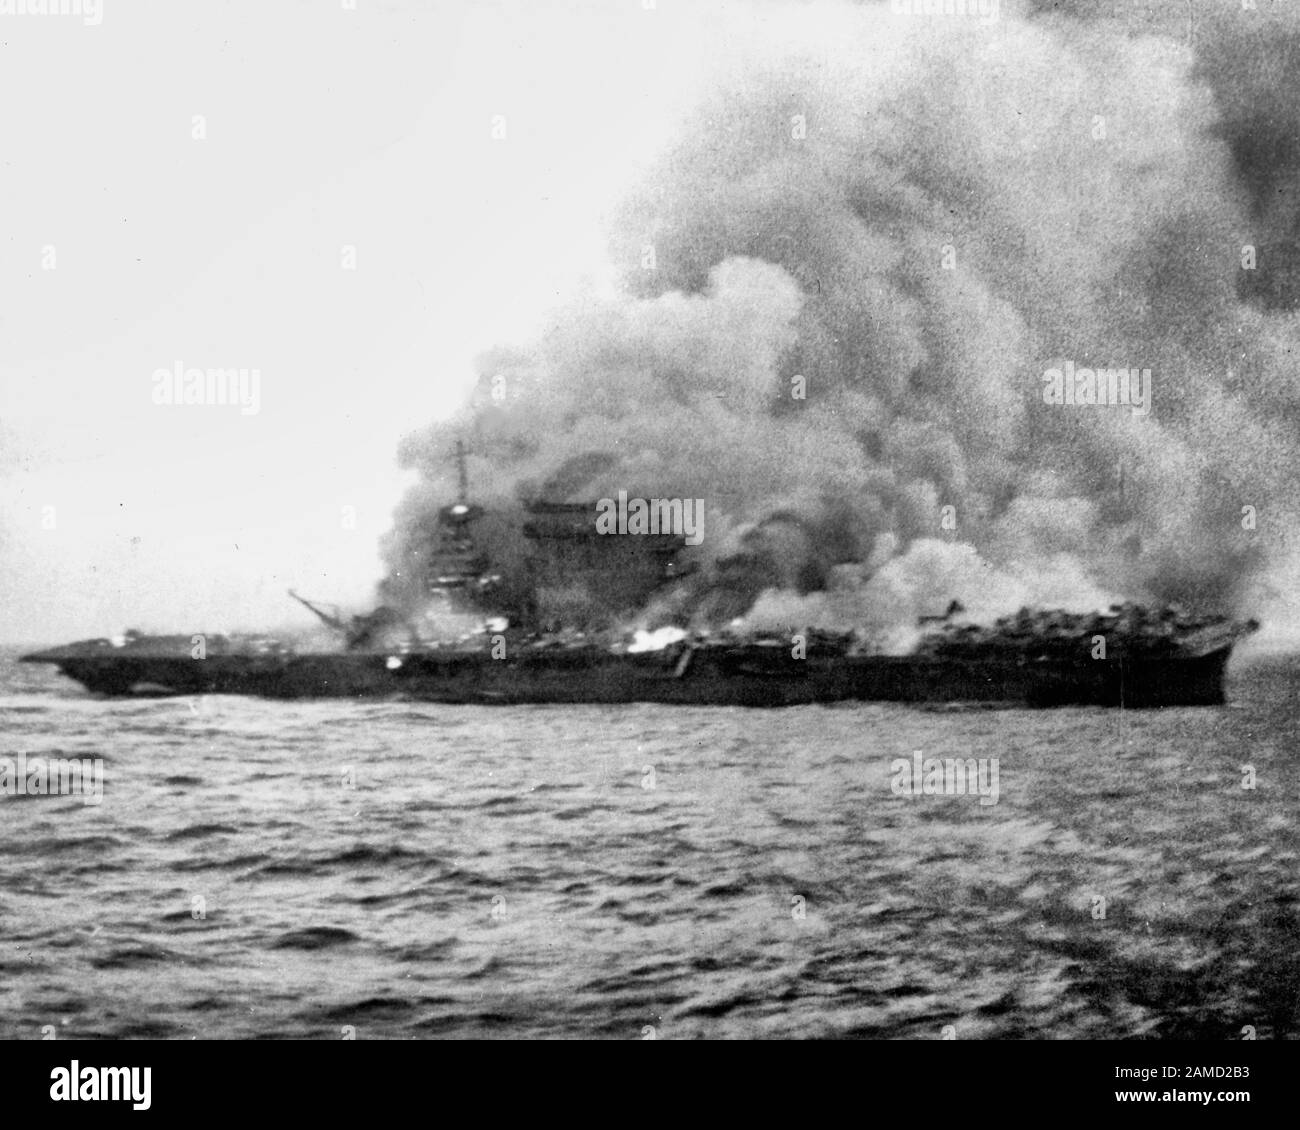 Der US-Marineinfanterie USS Lexington (CV-2), die während der Schlacht am Korallenmeer, 8. Mai 1942, das Schiff verbrannte und versenkte. Beachten Sie die Flugzeuge, die nach hinten geparkt wurden, wo die Brände noch nicht erreicht sind. Stockfoto